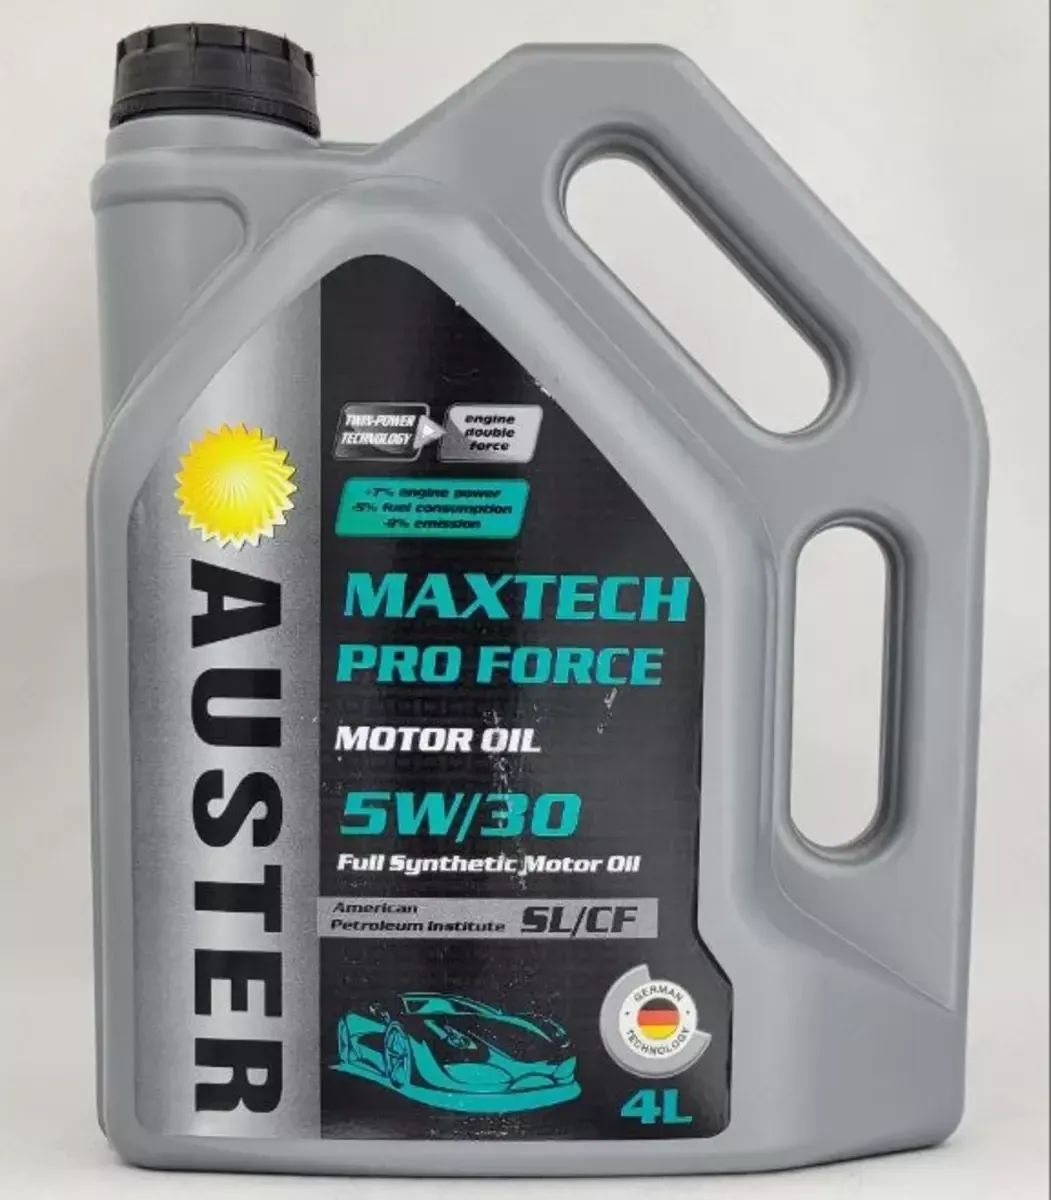 Motor moyi Auster Maxtech Pro Force 5W 30#1